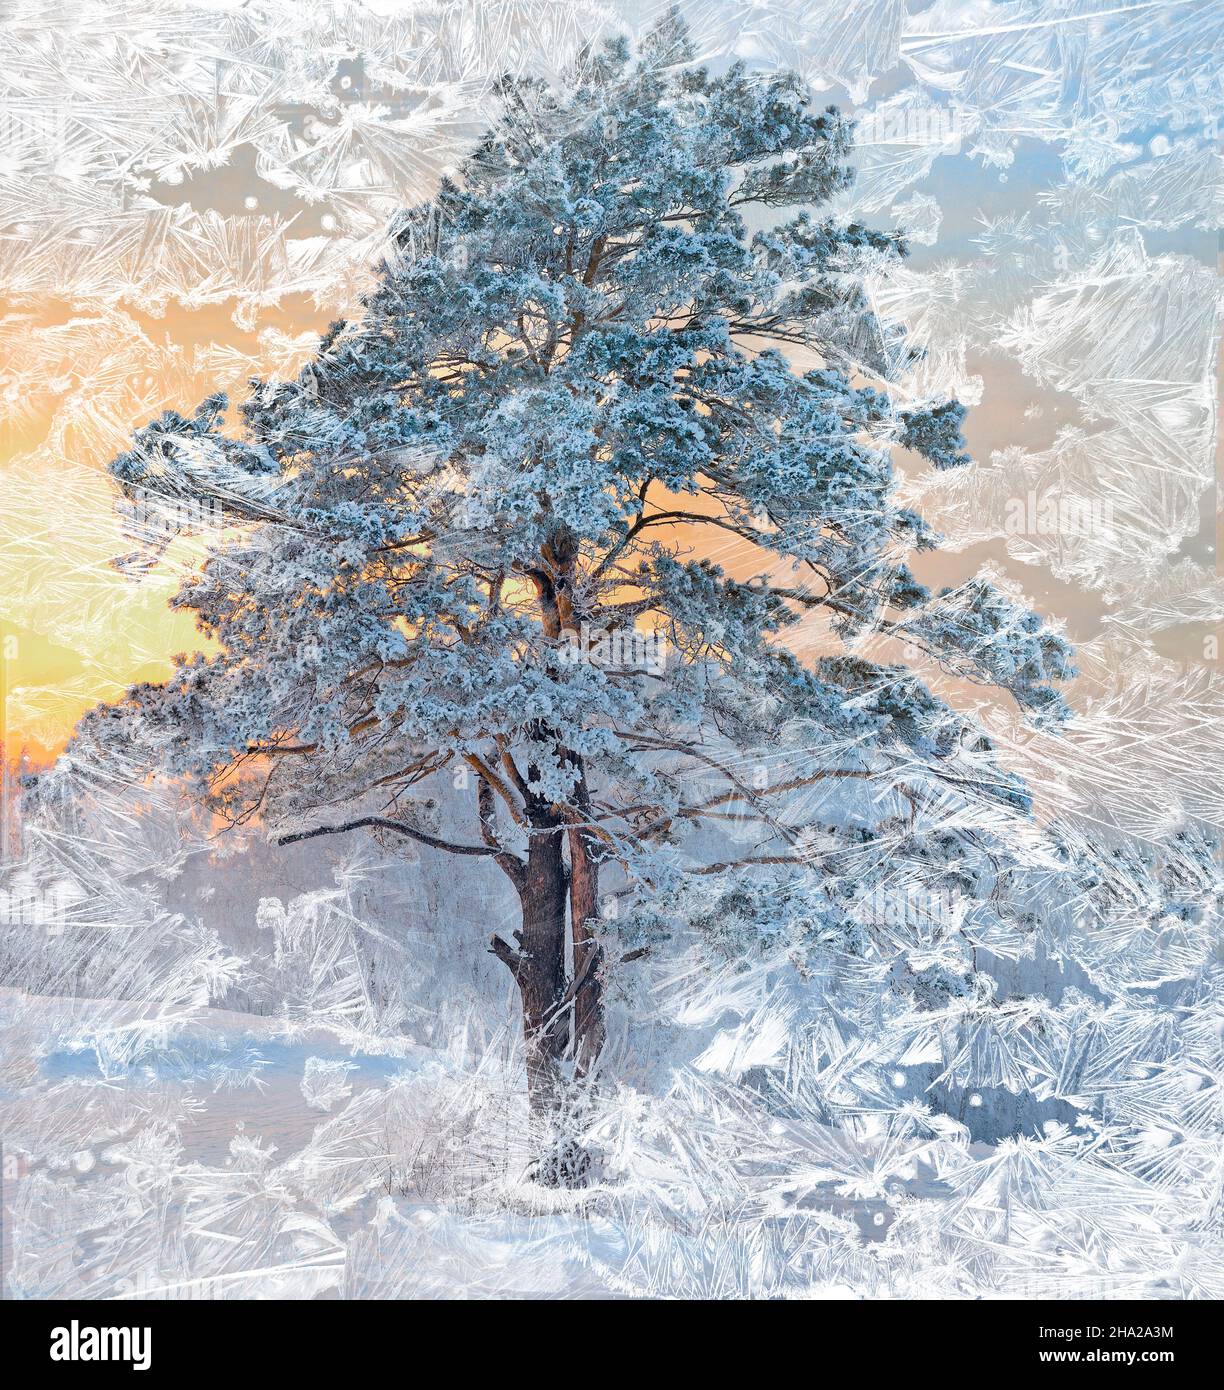 Precioso pino con nieve y escarcha cubiertas al atardecer - vista a través de ventanas congeladas. Adorno de hielo helado - fondo abstracto de invierno en Foto de stock